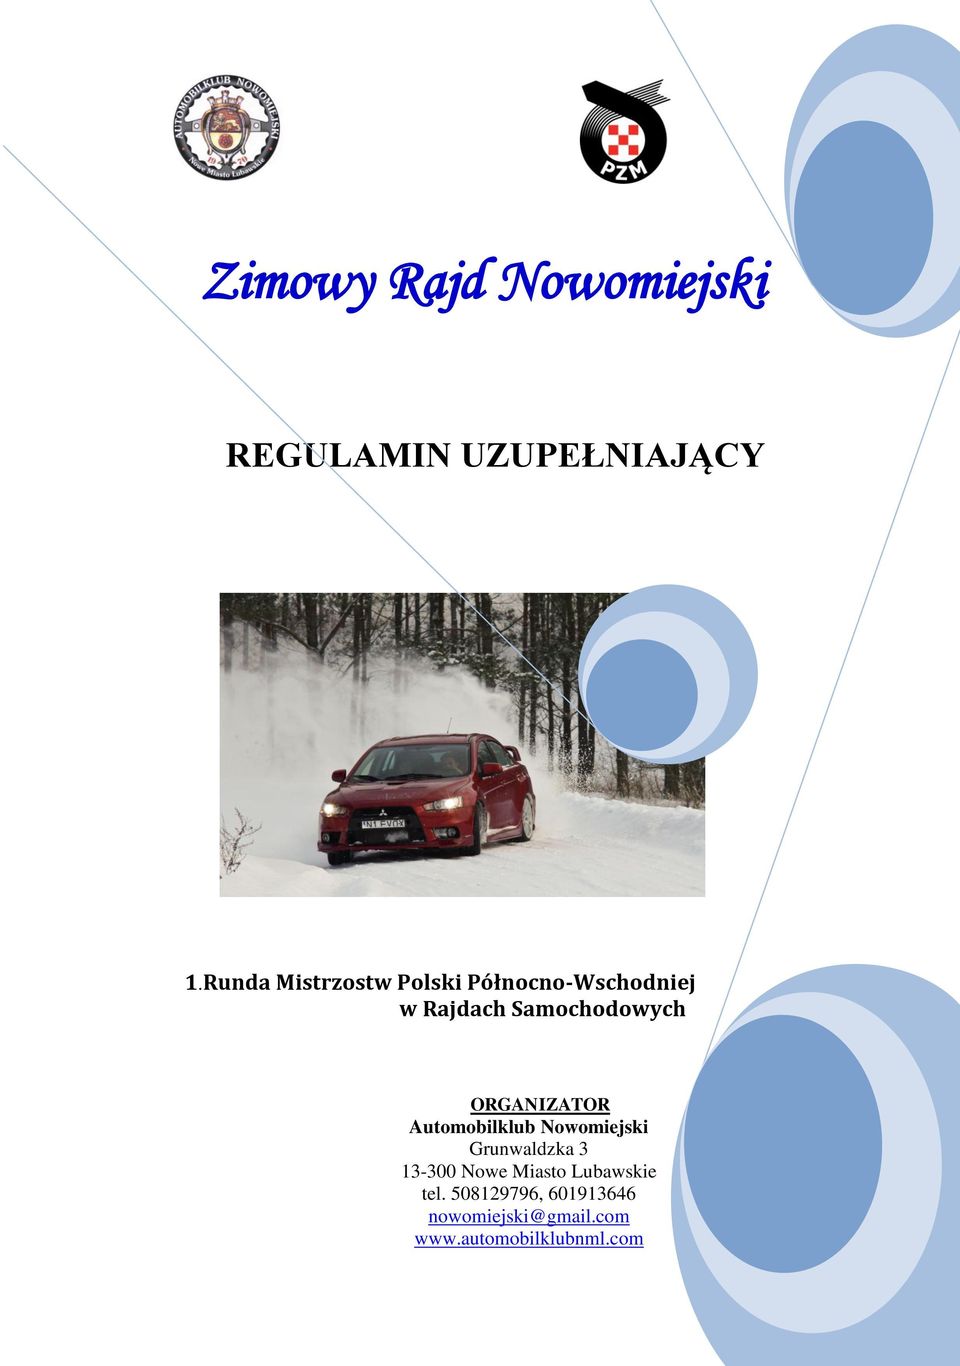 ORGANIZATOR Automobilklub Nowomiejski Grunwaldzka 3 13-300 Nowe